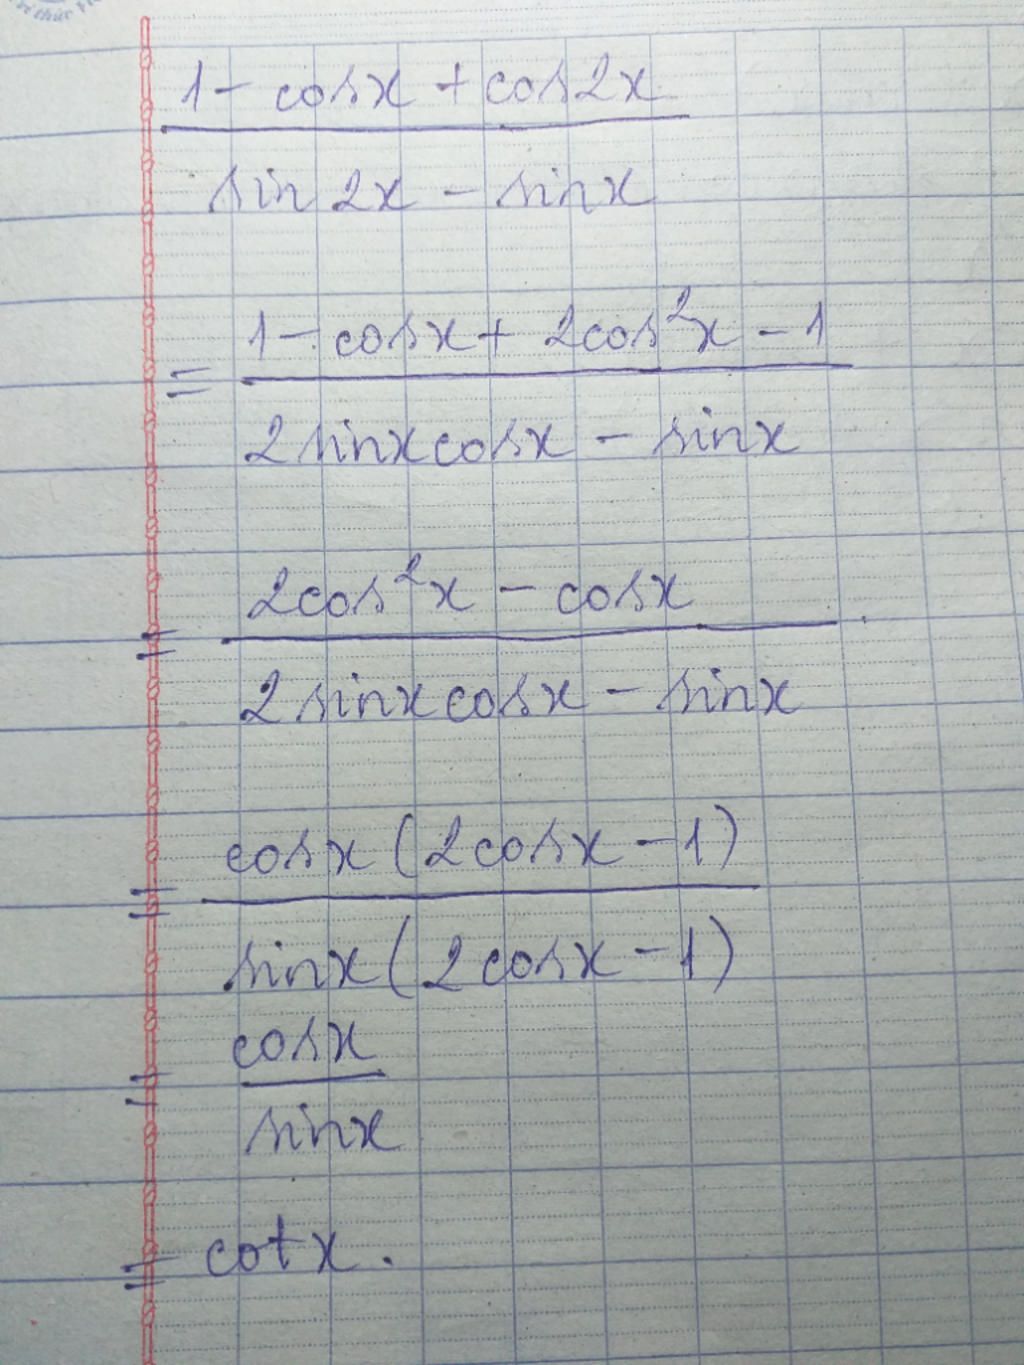 Tính tổng sin 2x + sin x.
